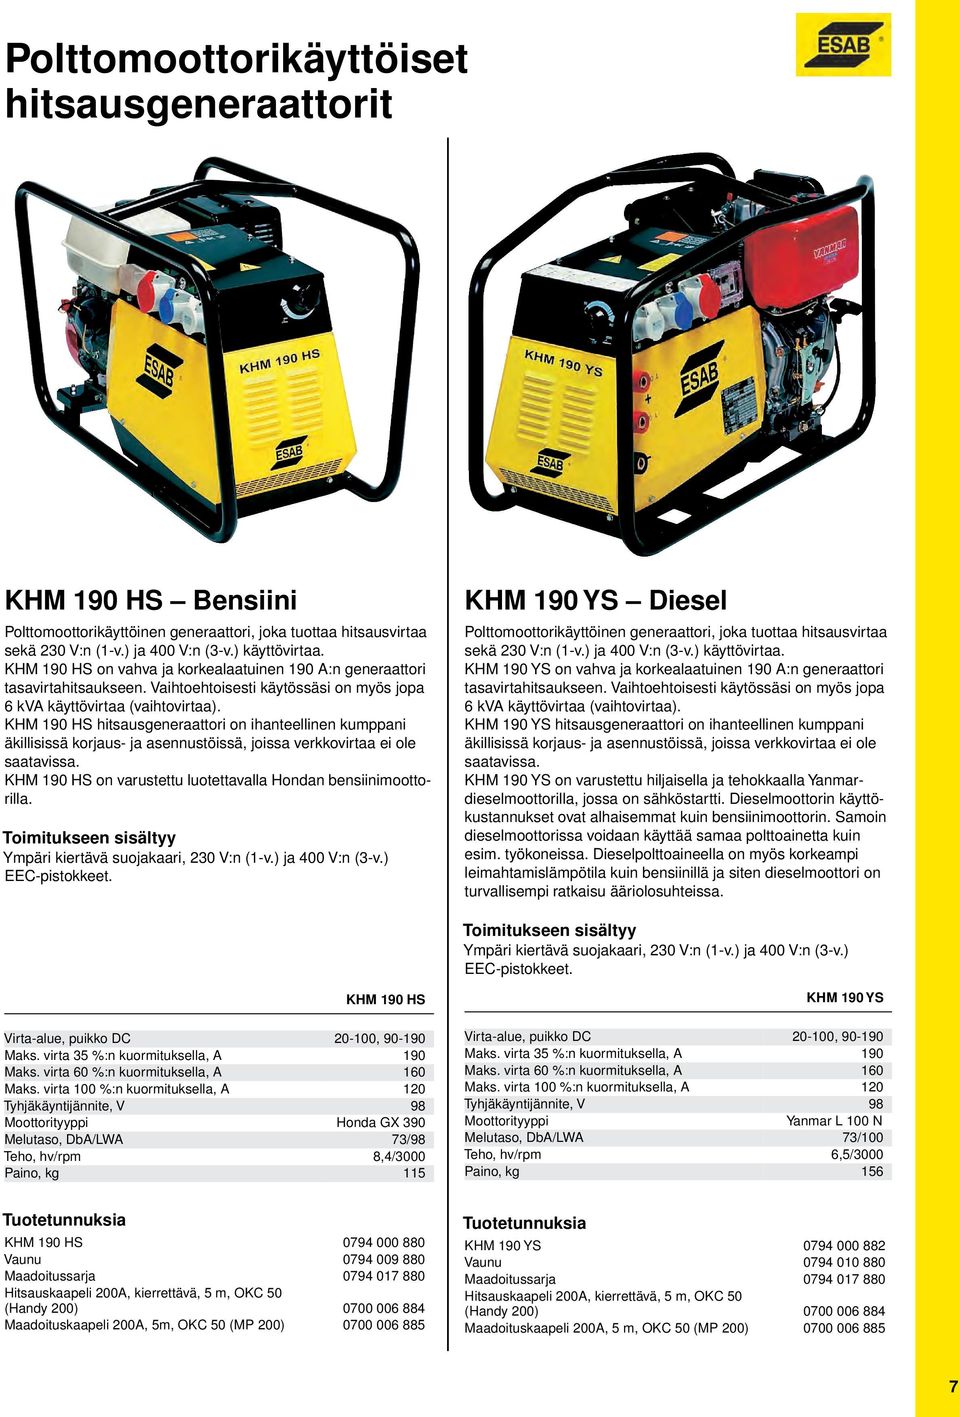 KHM 190 HS hitsausgeneraattori on ihanteellinen kumppani äkillisissä korjaus ja asennustöissä, joissa verkkovirtaa ei ole saatavissa. KHM 190 HS on varustettu luotettavalla Hondan bensiinimoottorilla.